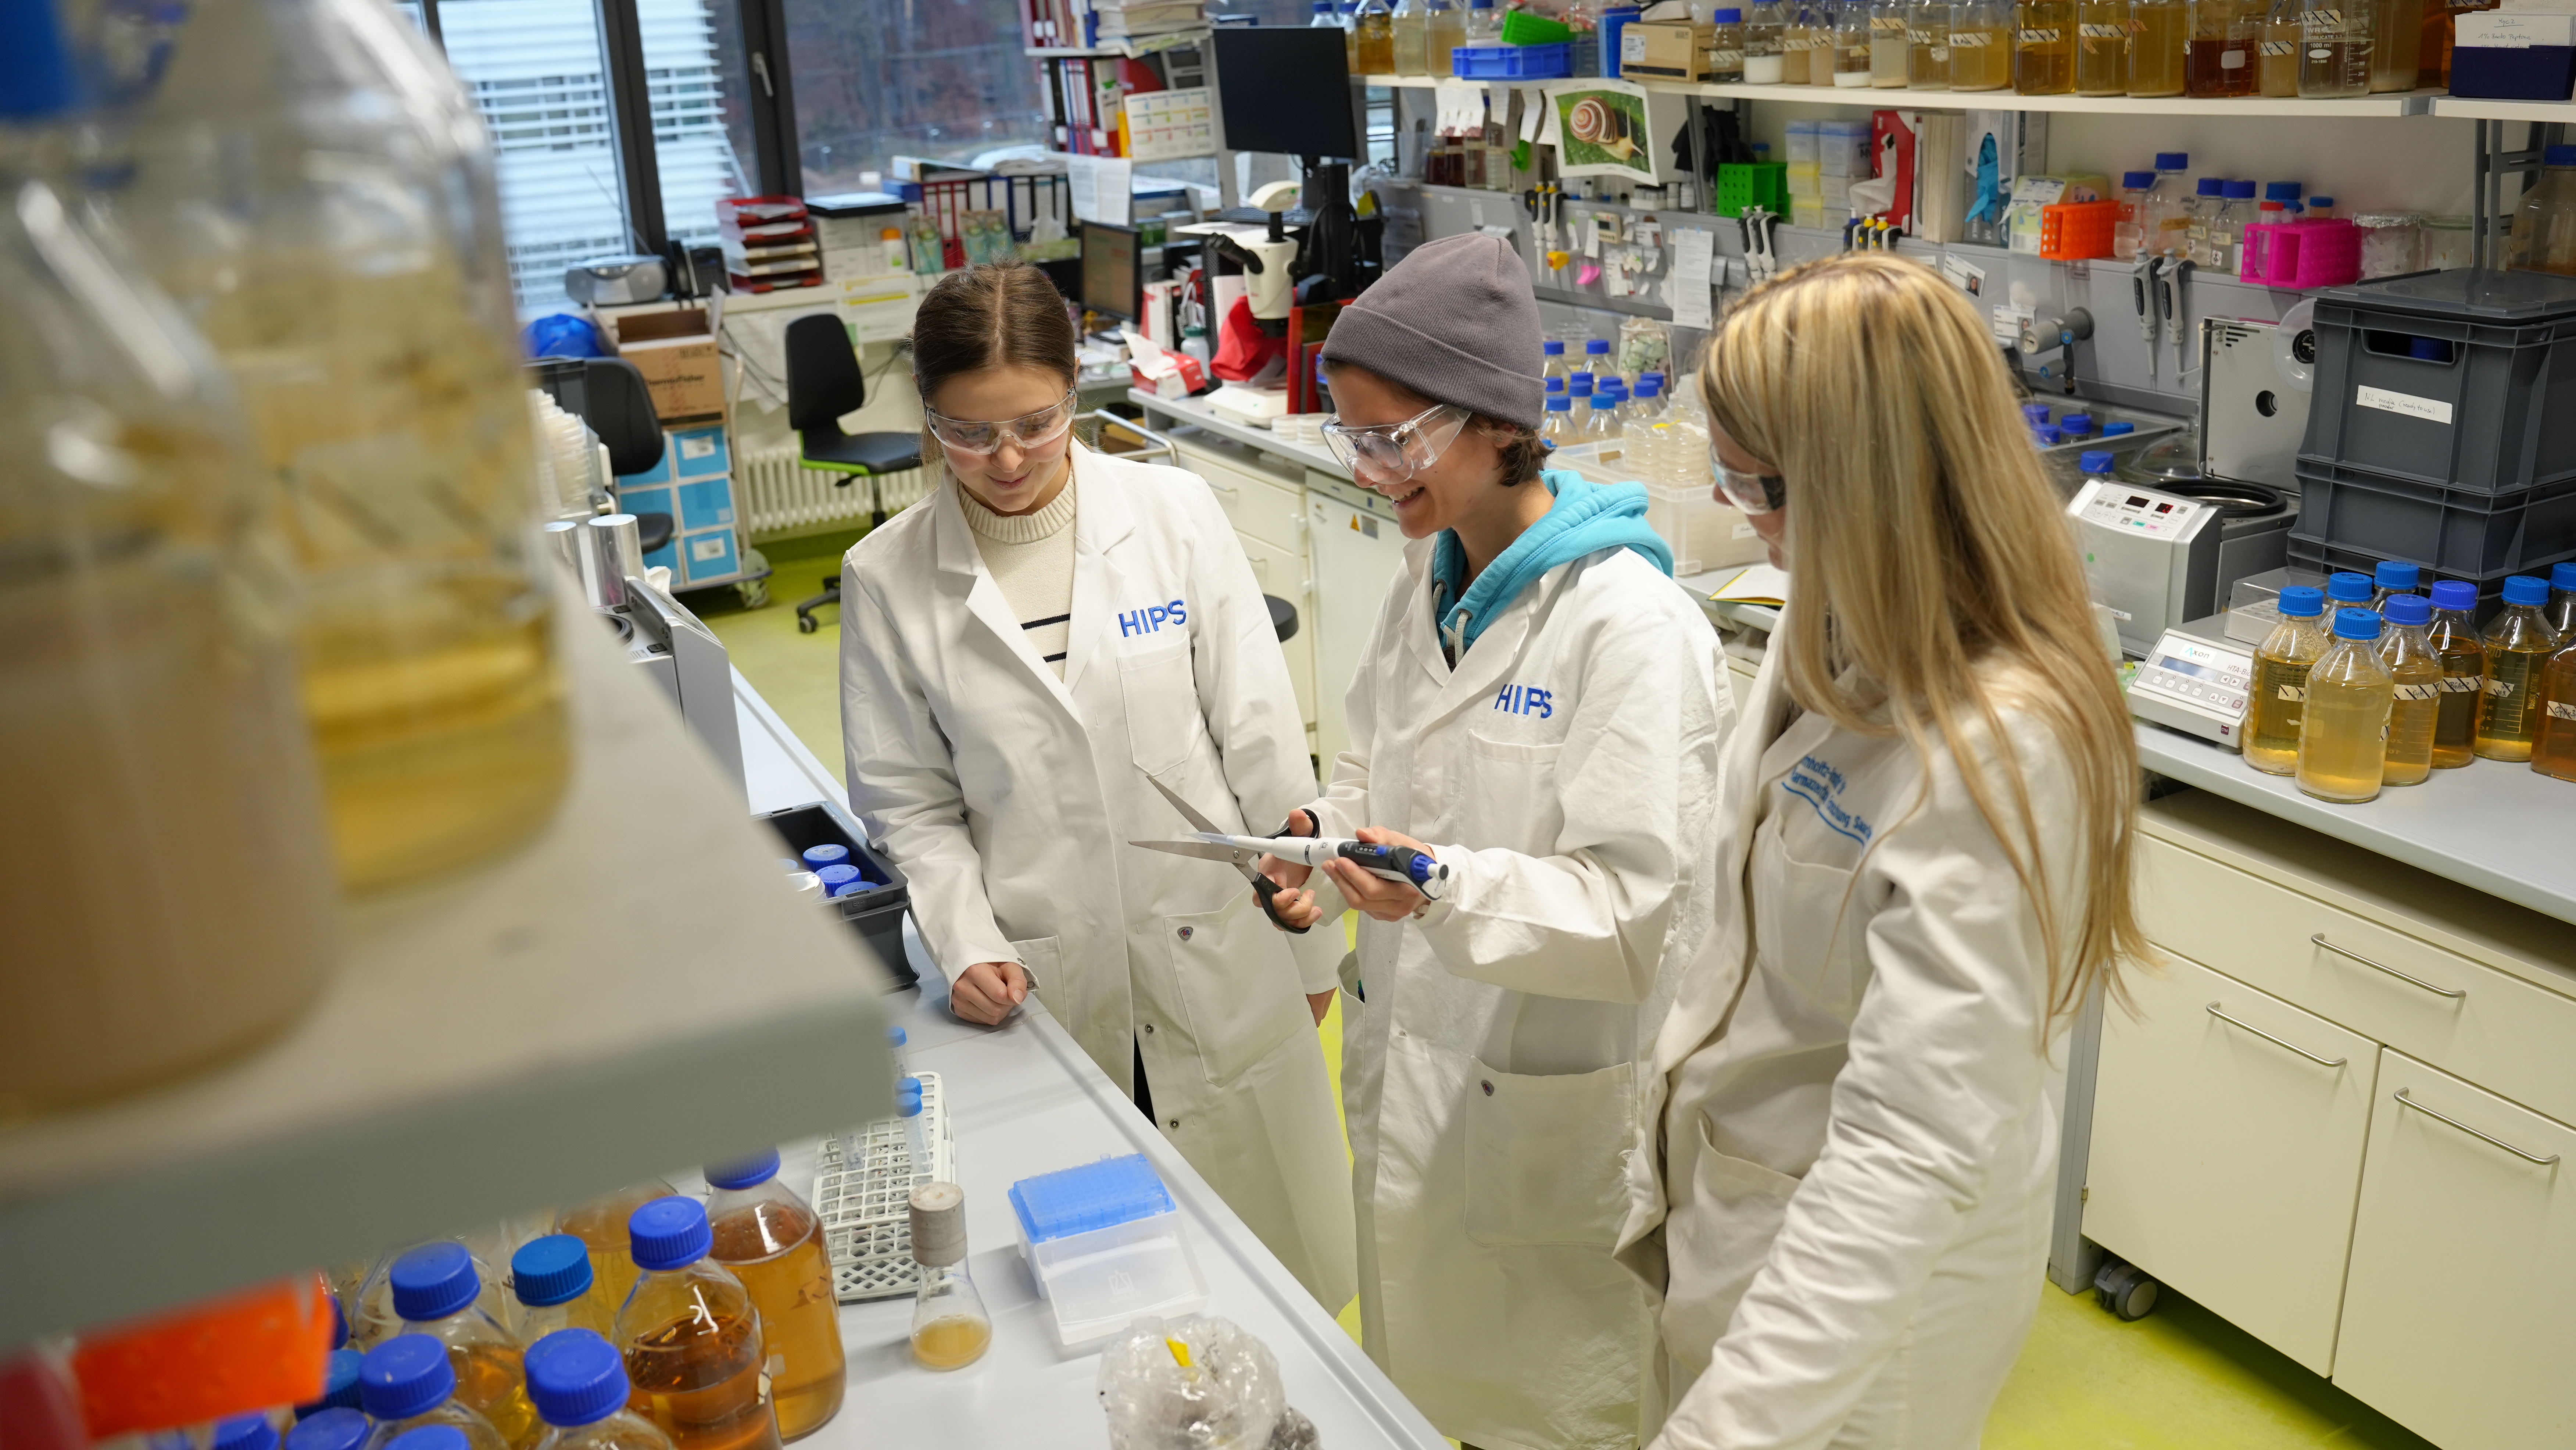 Emma Denne, Anna-Maria Kastner (Doktorandin) und Anna-Lena Huber (Doktorandin) bei der Arbeit im Labor